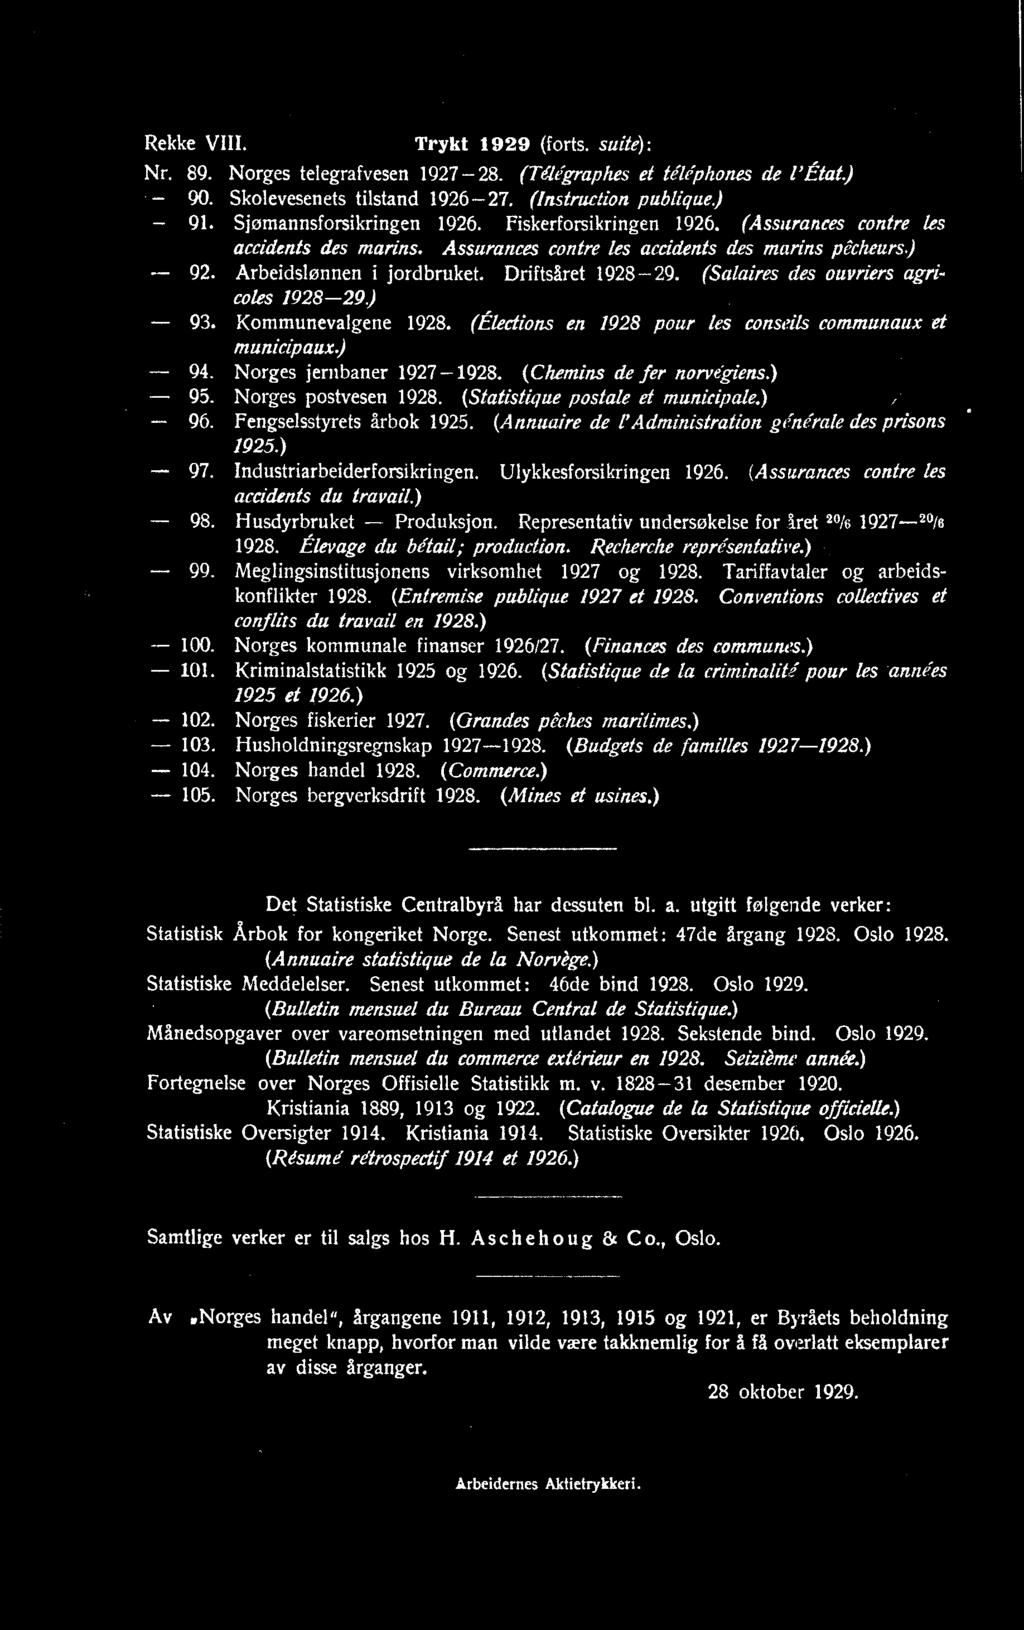 Industriarbeiderforsikringen. Ulykkesforsikringen 1926. (Assurances contre les accidents du travail.) 98. Husdyrbruket - Produksjon. Representativ undersøkelse for iret 20/6 1927-20/6 1928.